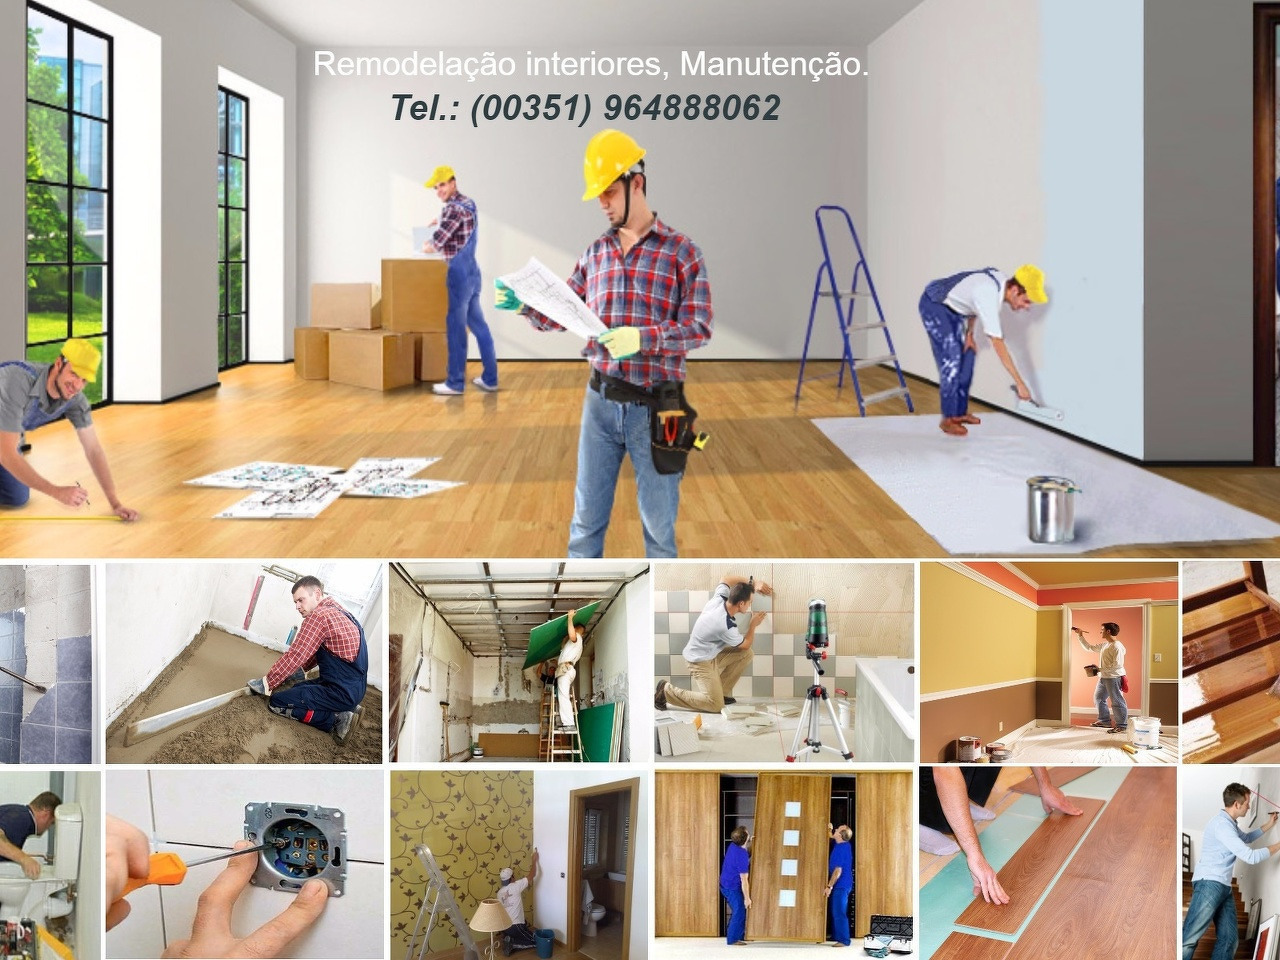 Renovação / Restauro / Remodelação e Manutenção de interiores - 1